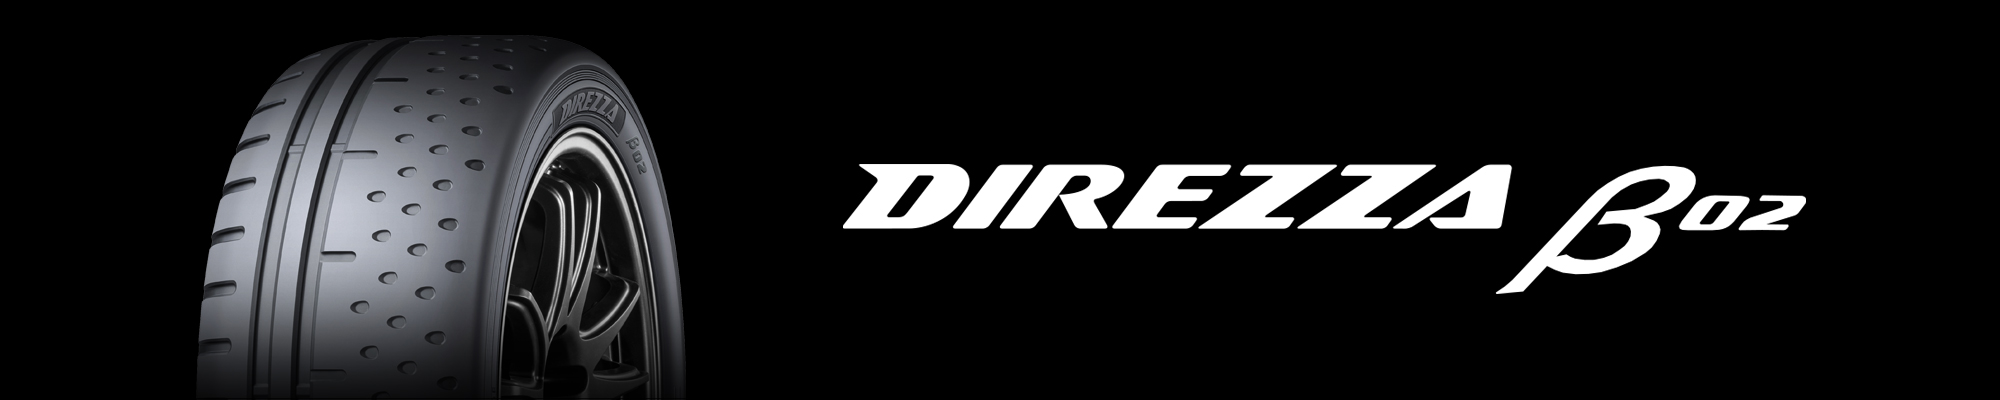 DIREZZA β02｜スポーツタイヤ｜ダンロップ【公式カタログ】